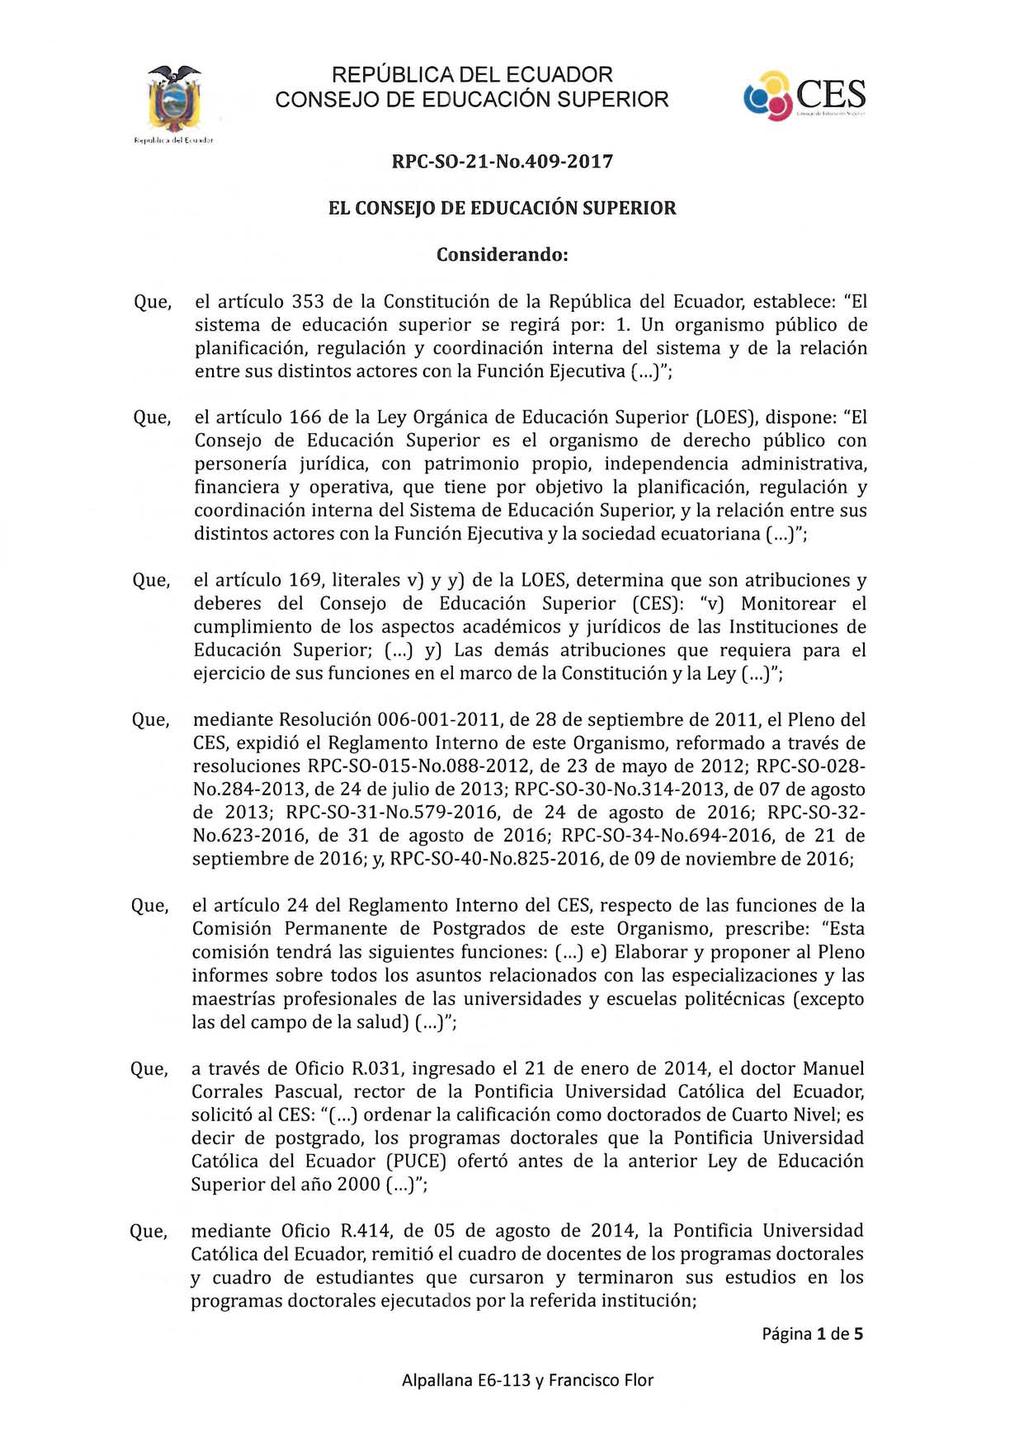 RPC-SO-2 1-No.409-2017 EL CONSEJO DE EDUCACIÓN SUPERIOR Considerando: el artículo 353 de la Constitución de la República del Ecuador, establece: "El sistema de educación superior se regirá por: 1.